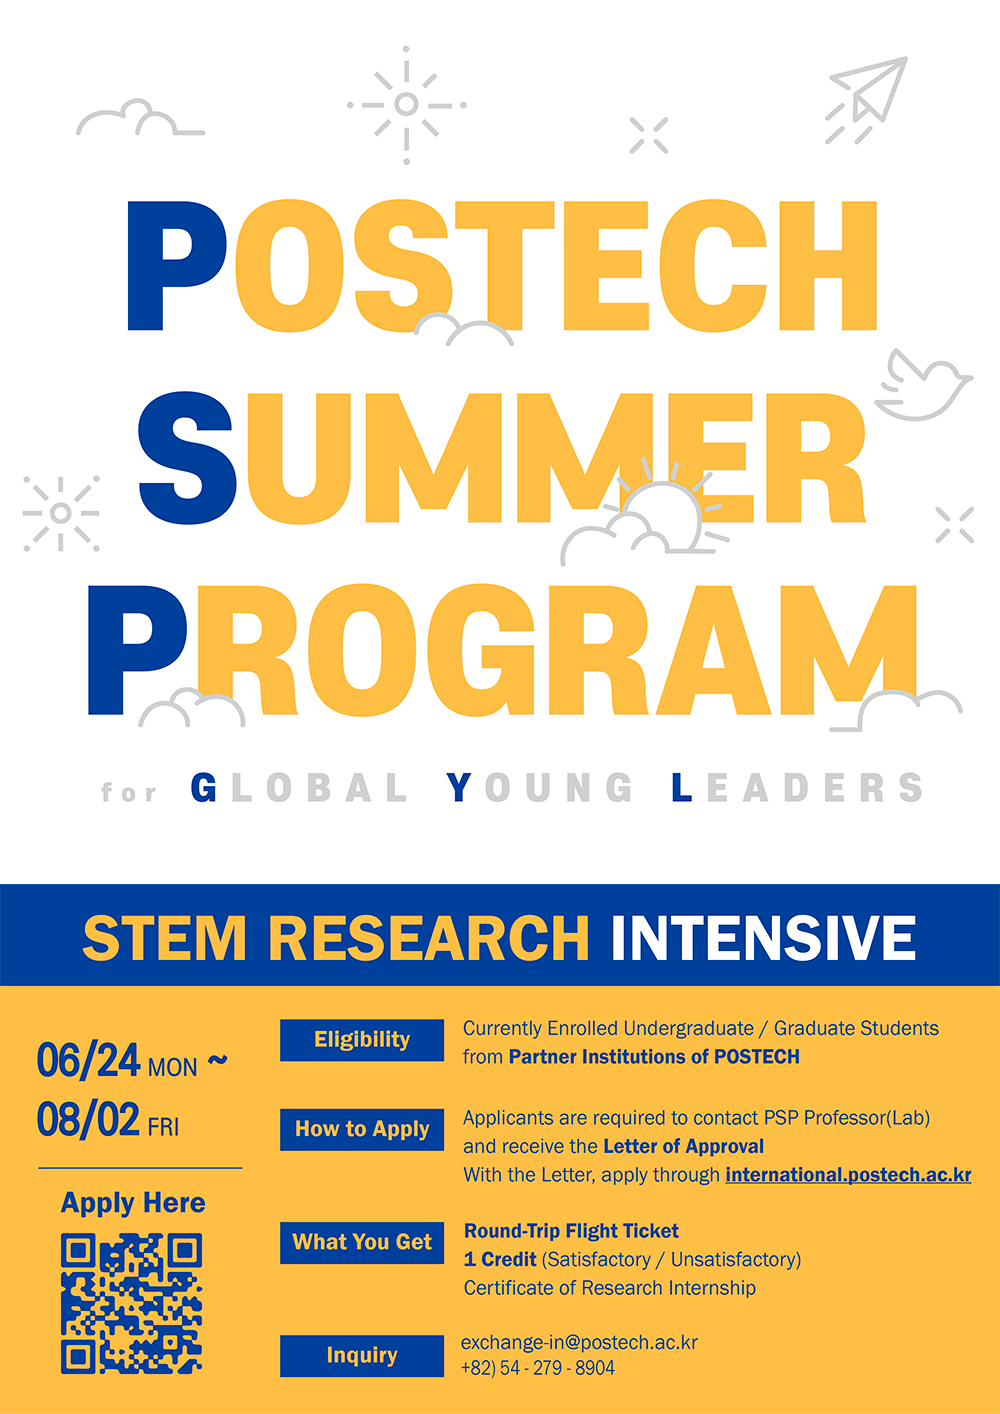 Postech Summer Program